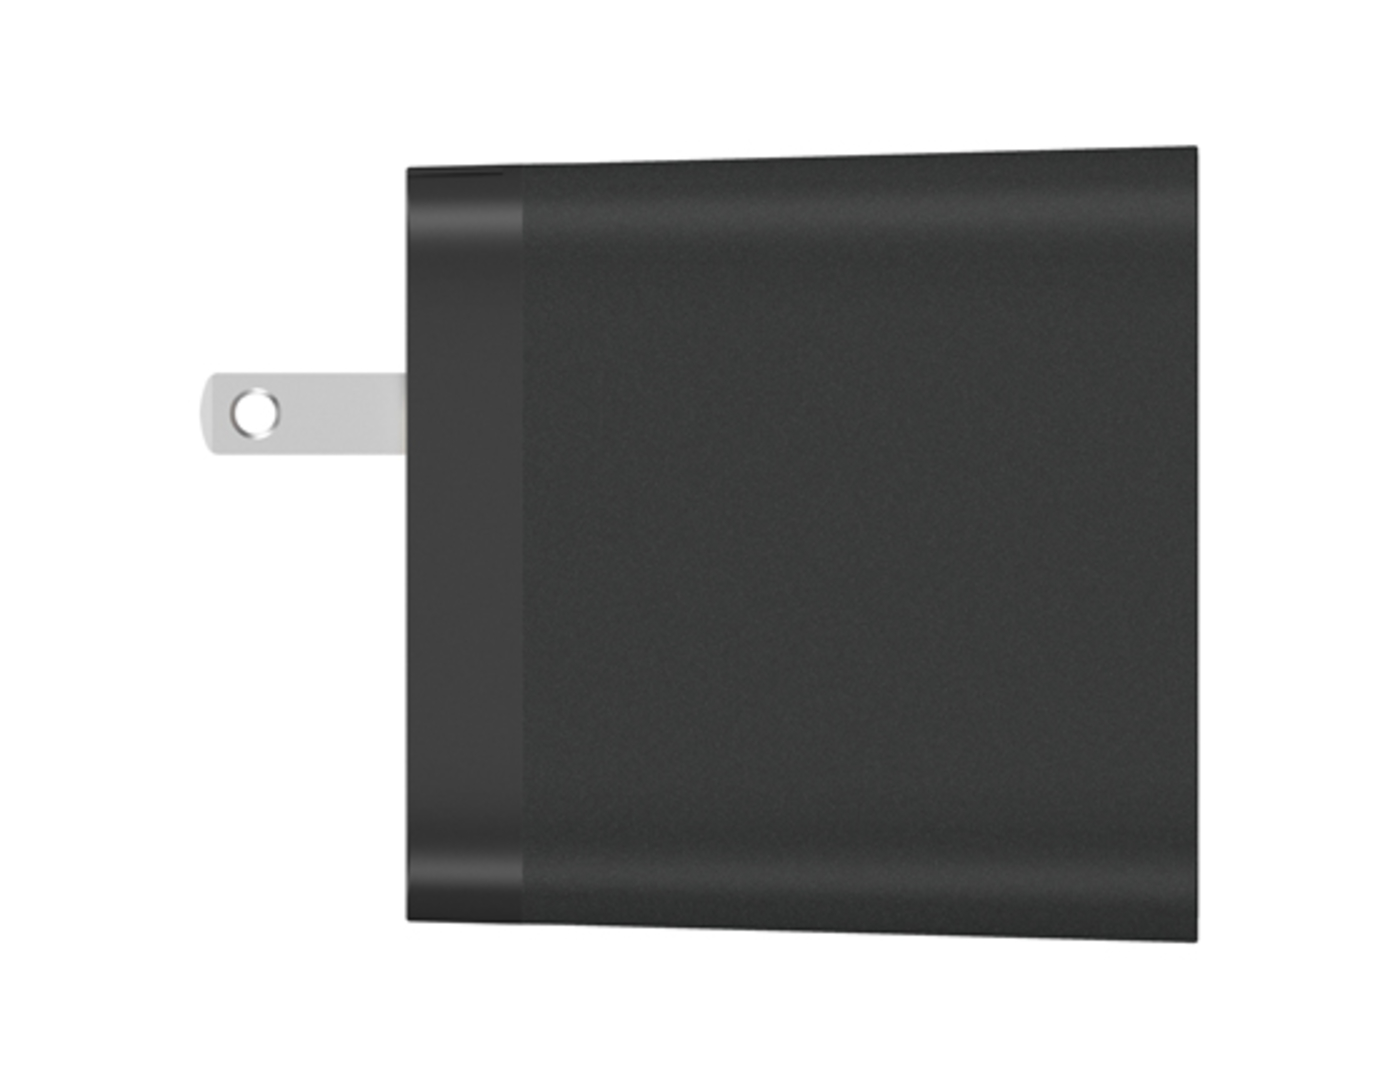 Adaptador|Cargador de Pared BELKIN Dual 27w (USB-C 15w |USB 12w )+ Cable USB-C a USB-C de 1.8 Metros Negro